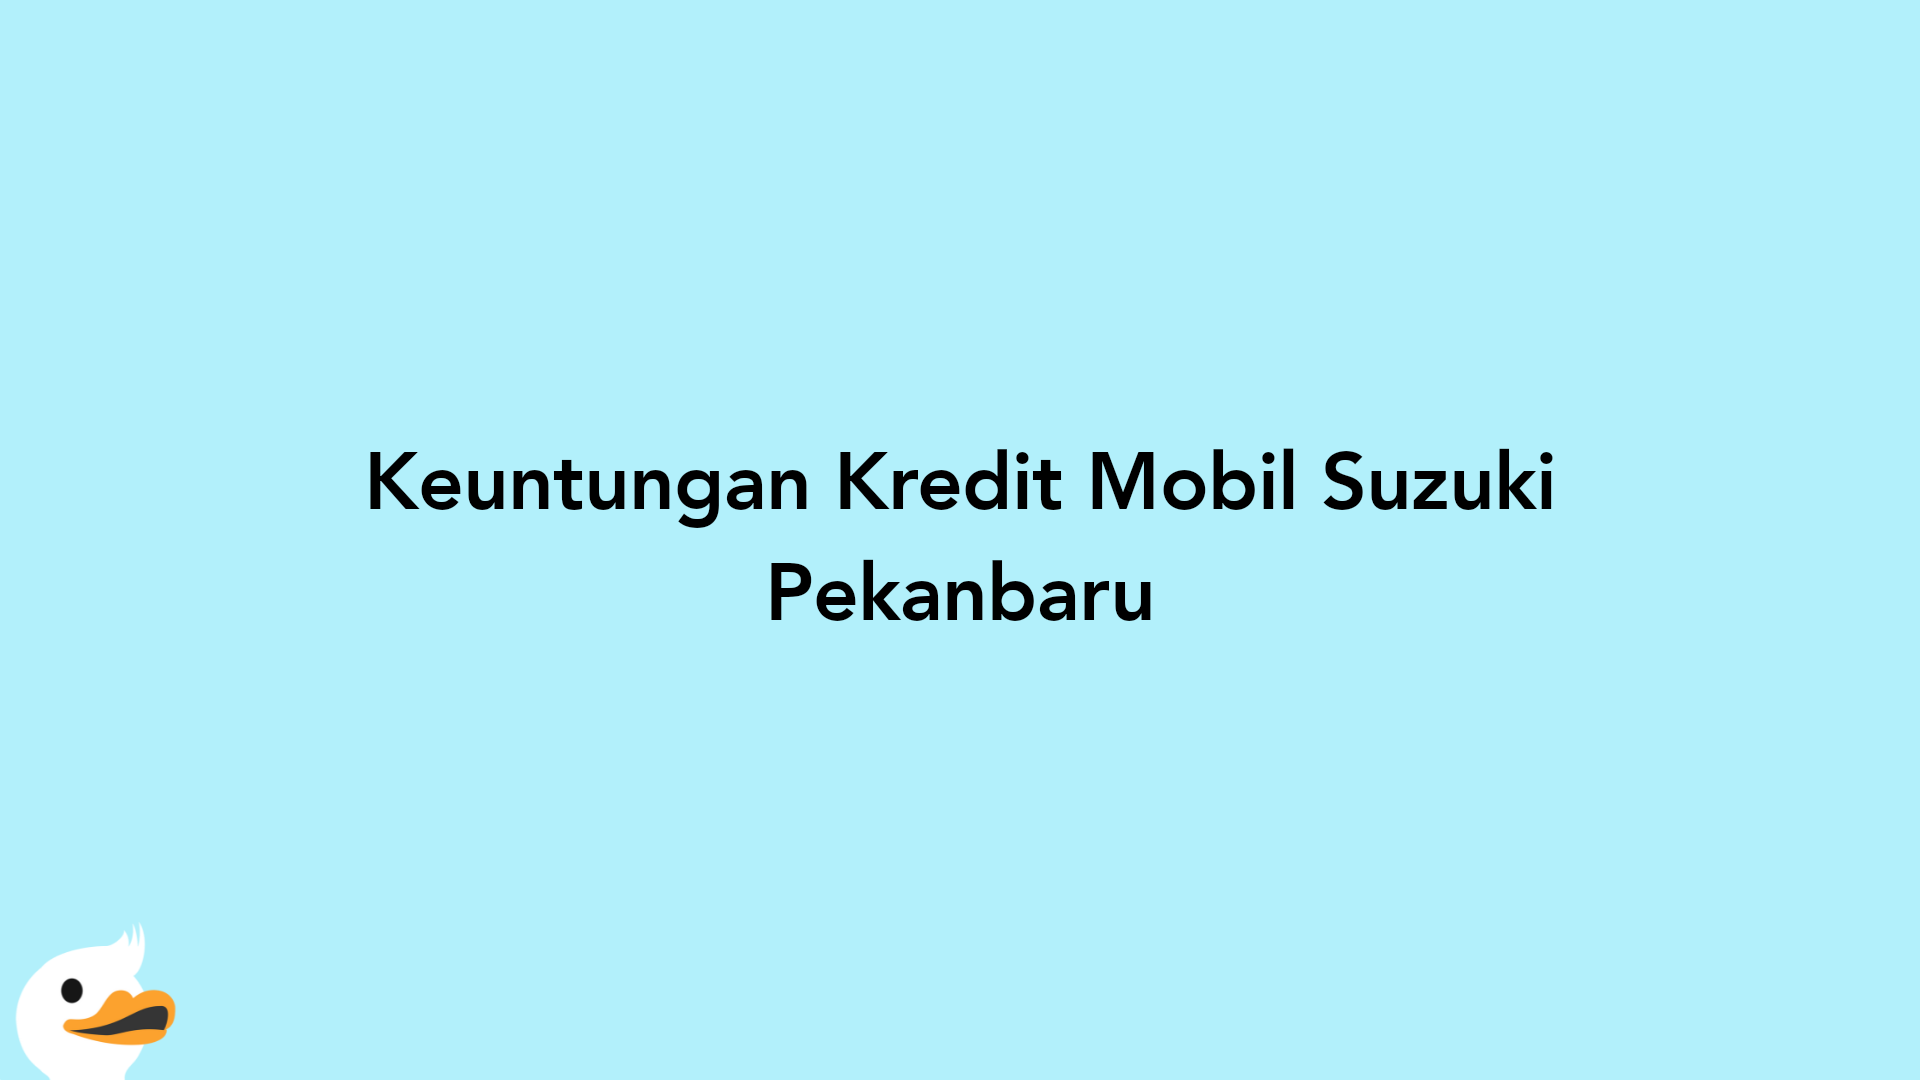 Keuntungan Kredit Mobil Suzuki Pekanbaru